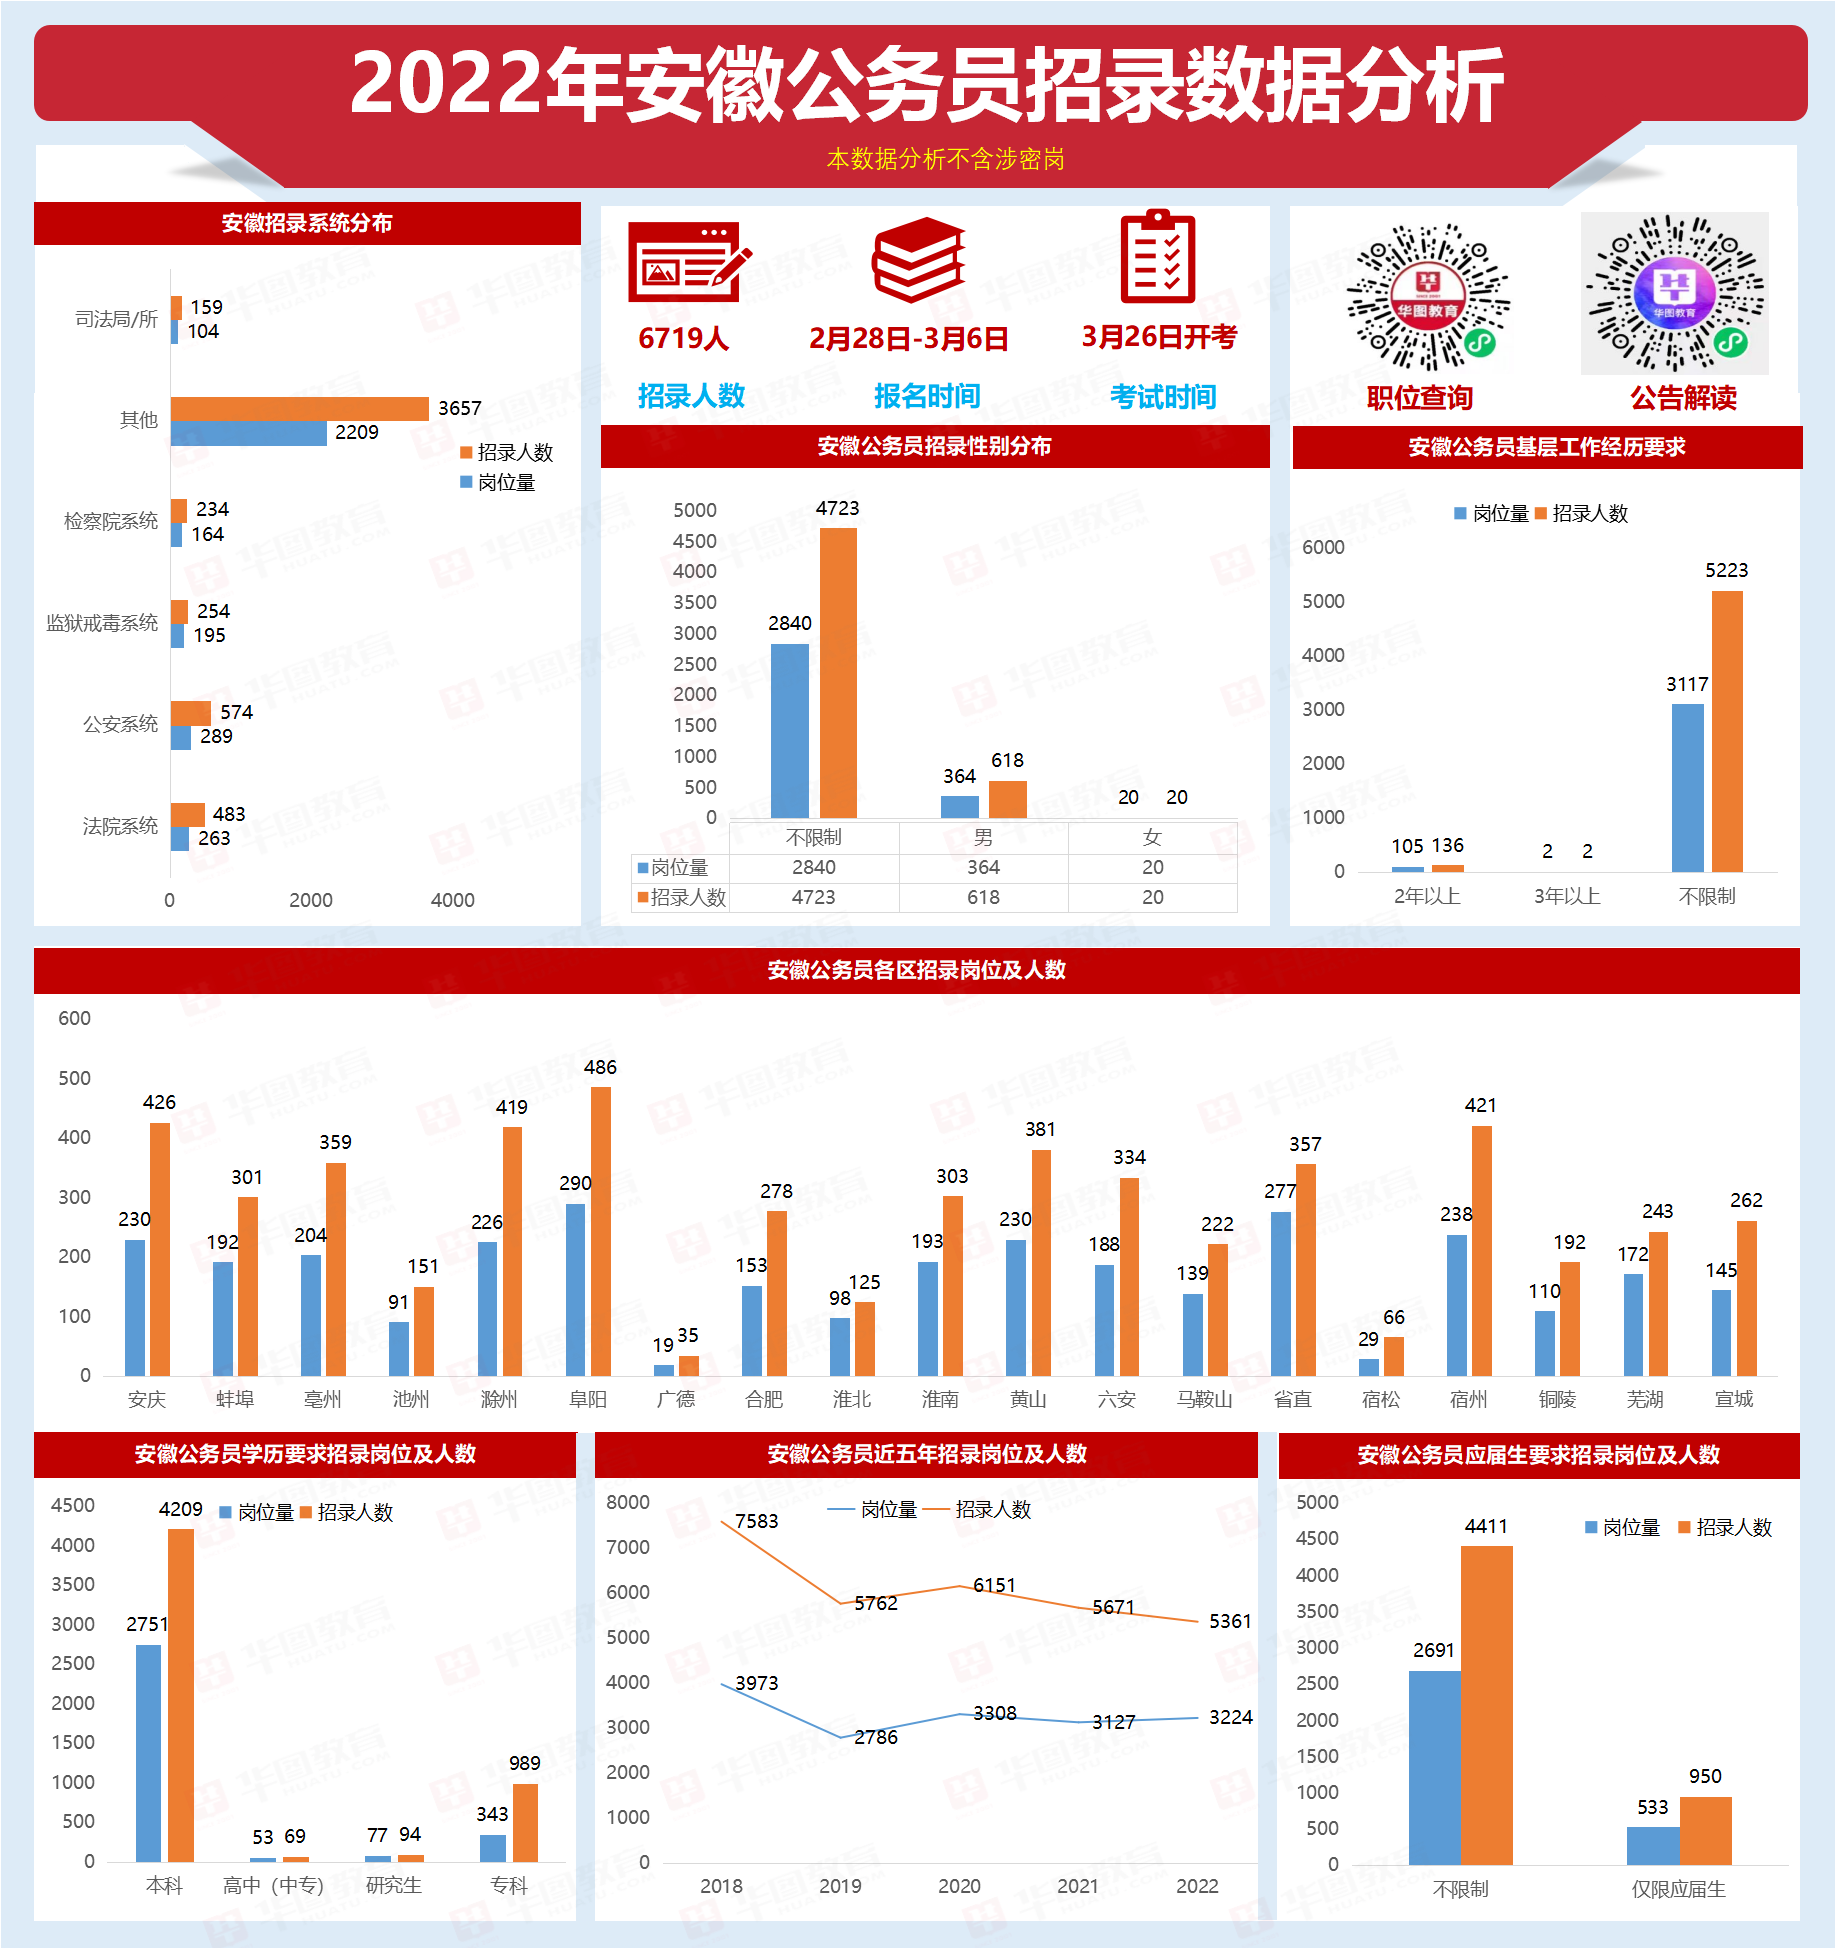 2022年国家公务员考试职位表(2022年国家公务员考试职位一览表) - 川峰生活指南